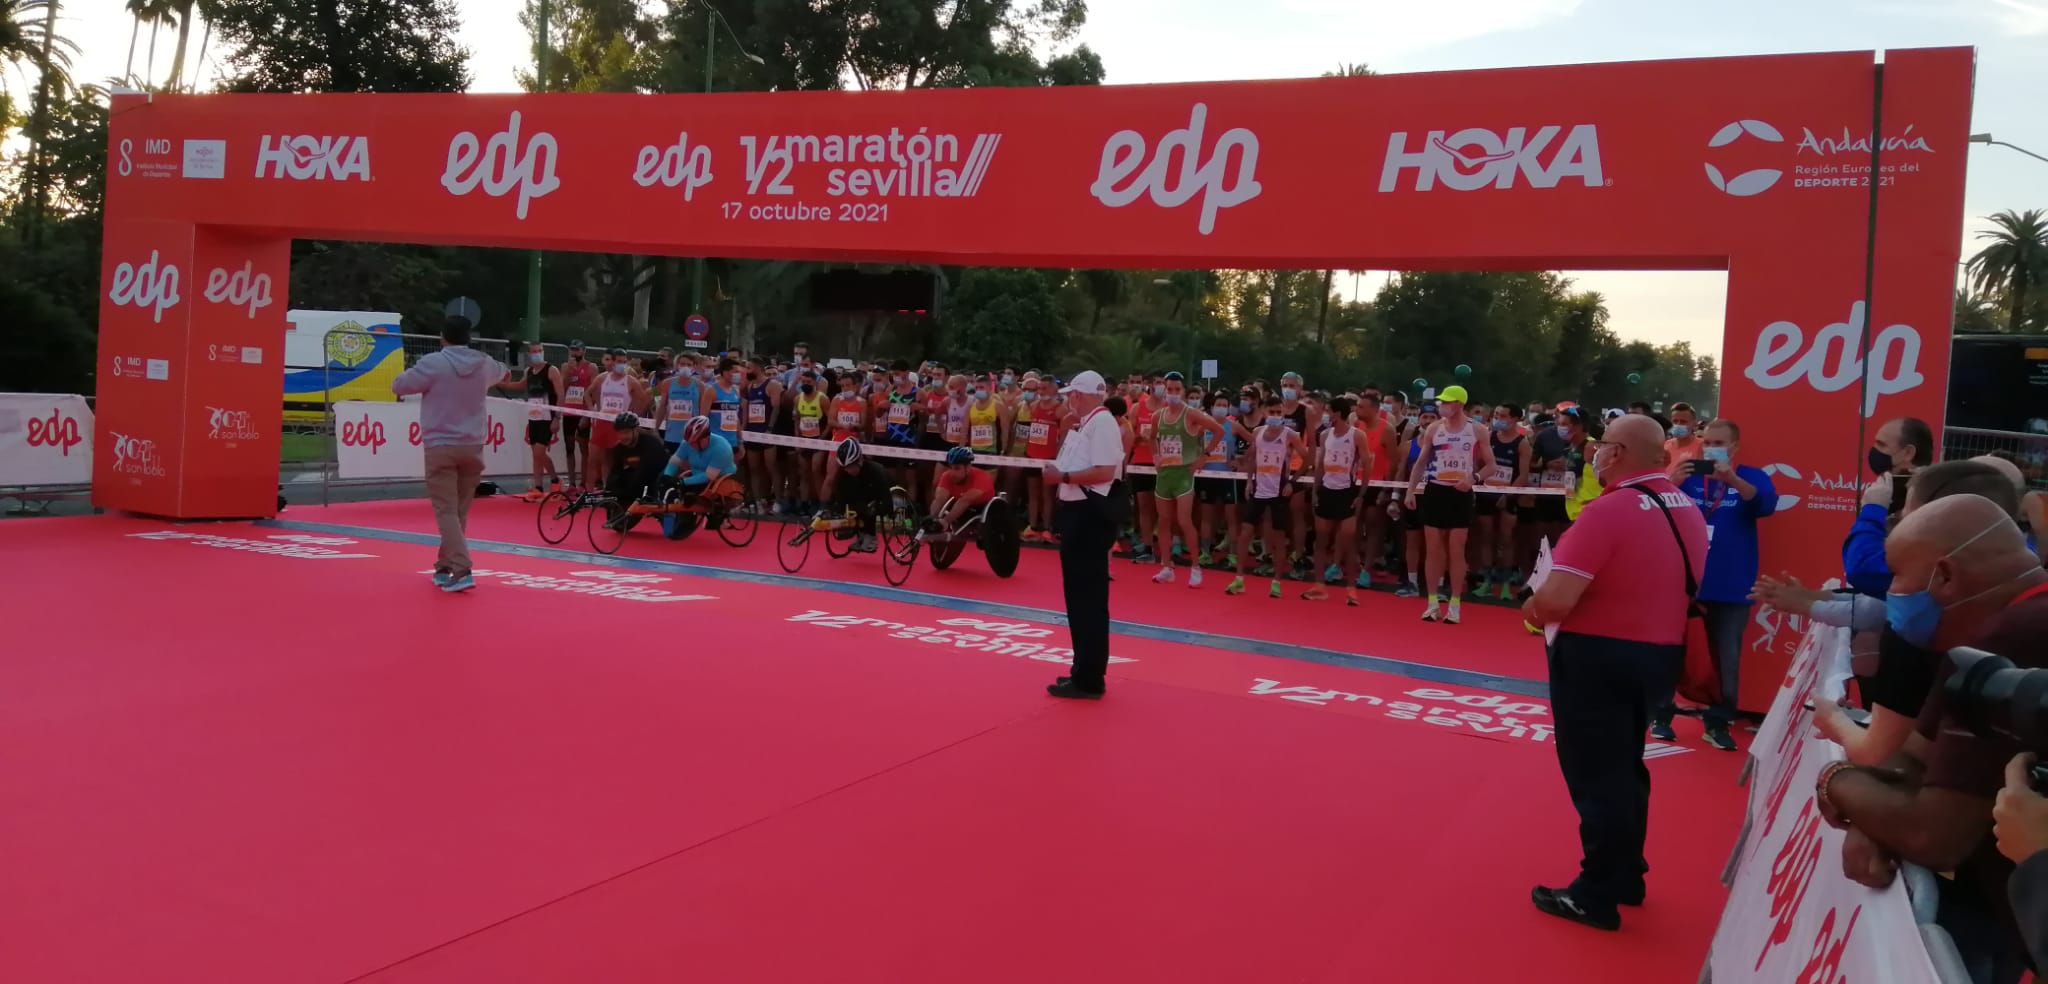 Atletas utreranos participan en la 26ª Edición de la EDP Media Maratón de Sevilla